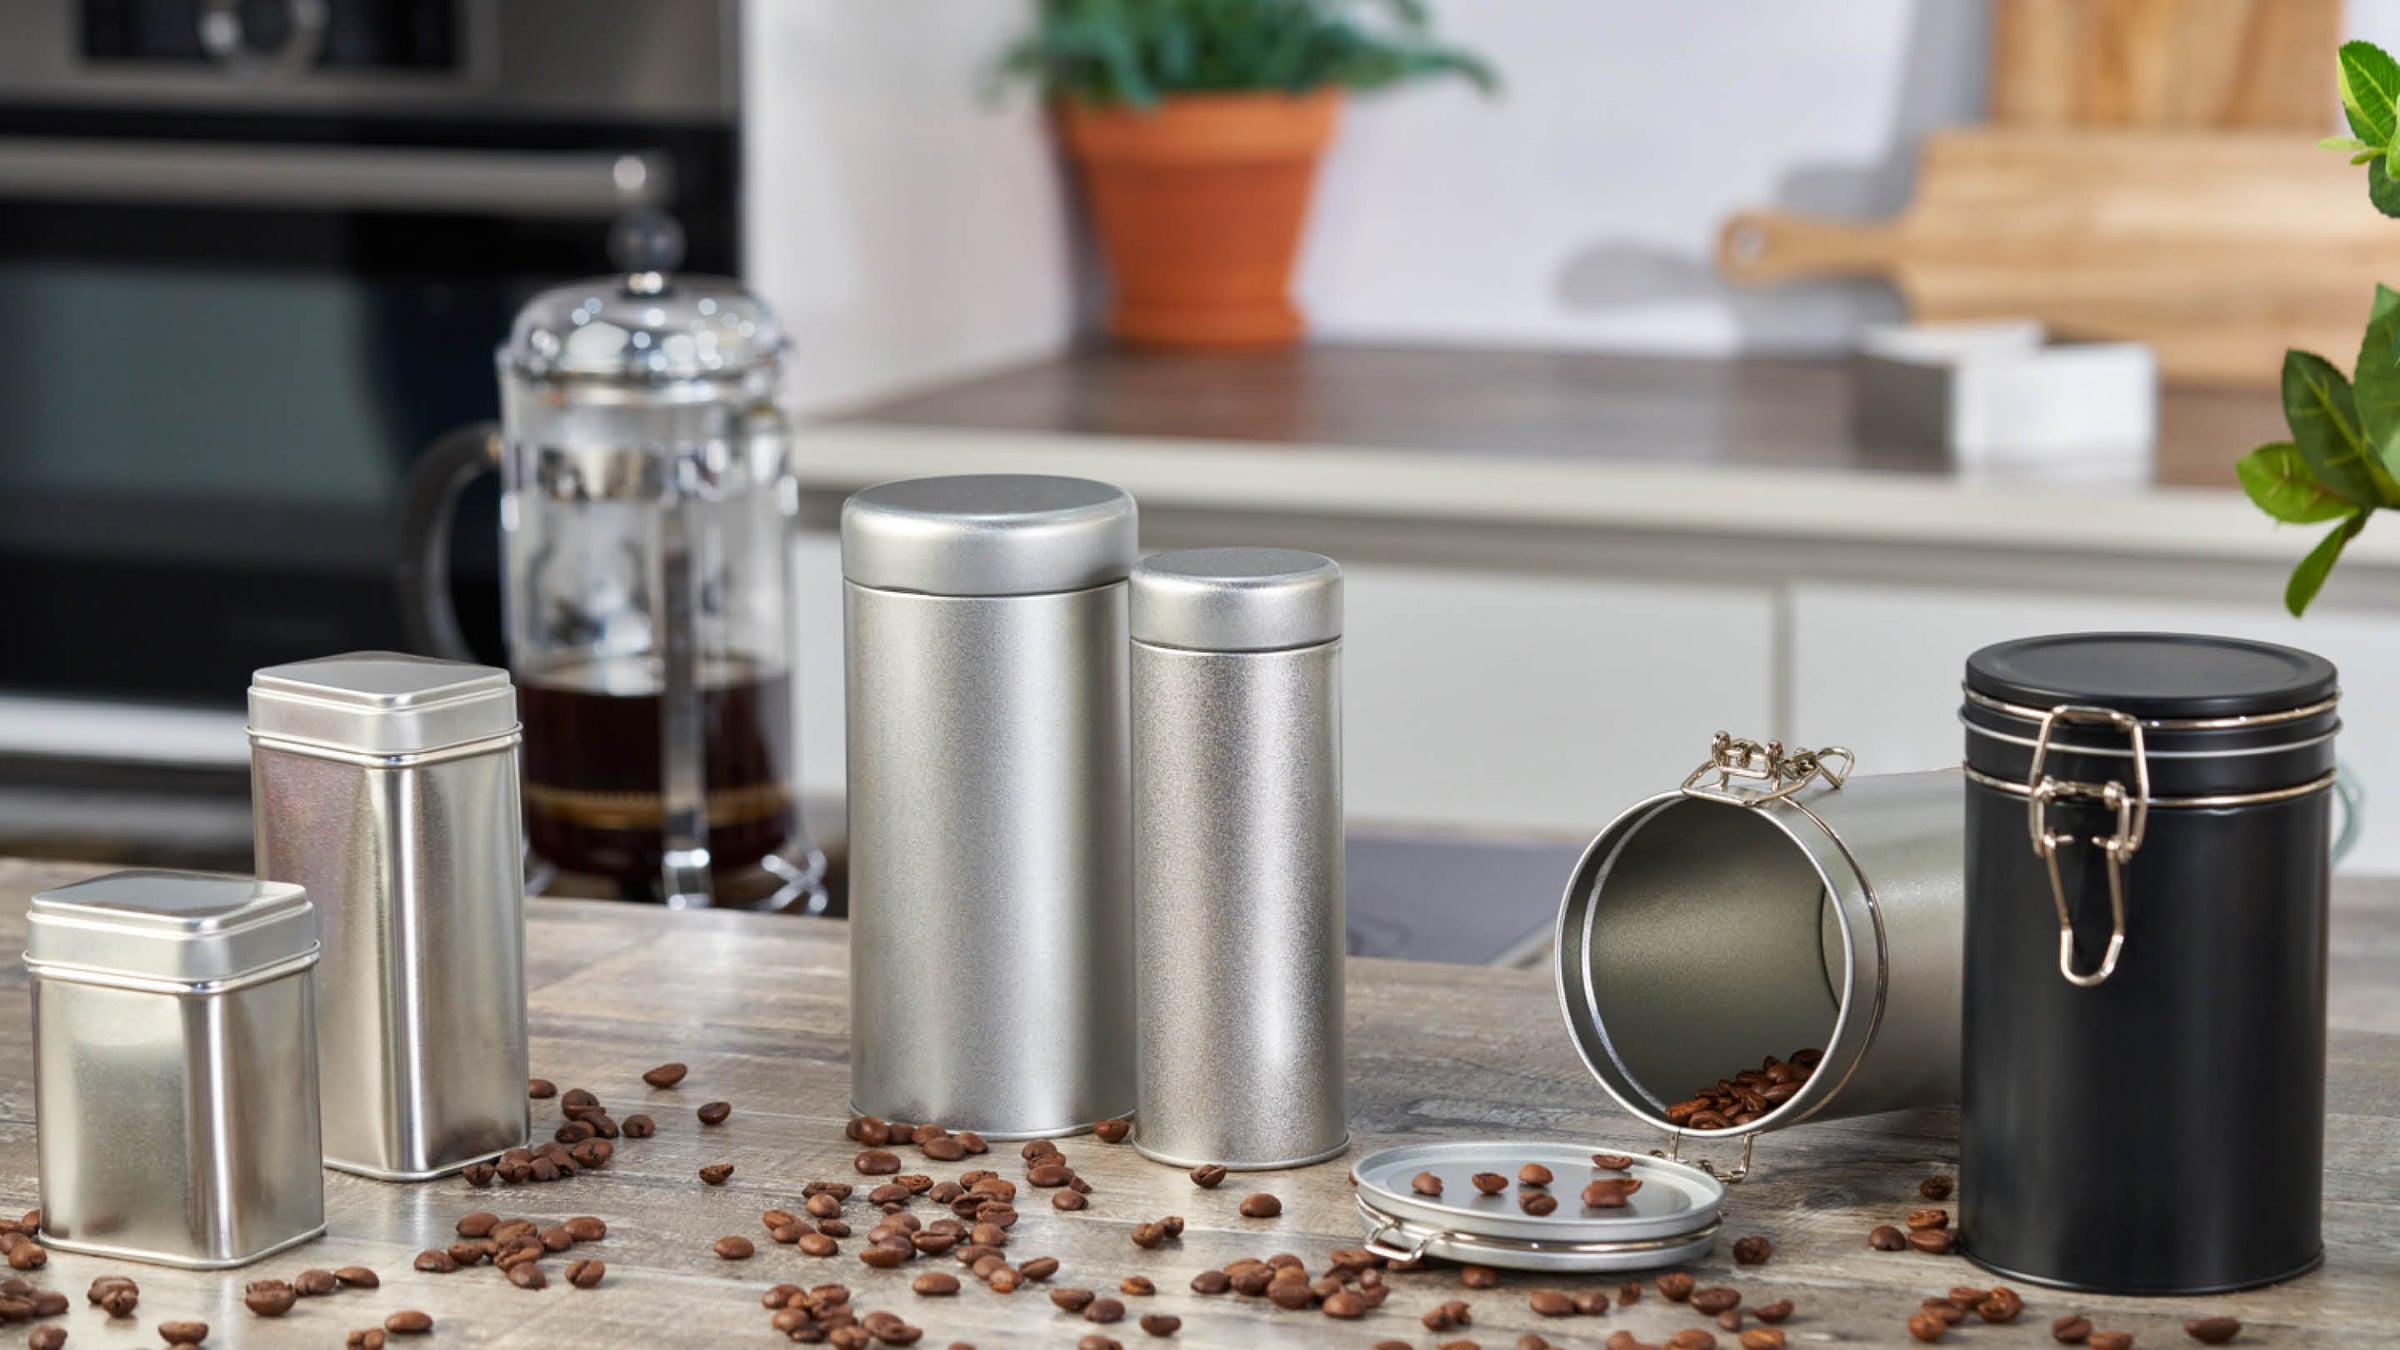 Una gamma di packaging in metallo utilizzati per caffè, spezie, ed erbe aromatiche, in cucina.